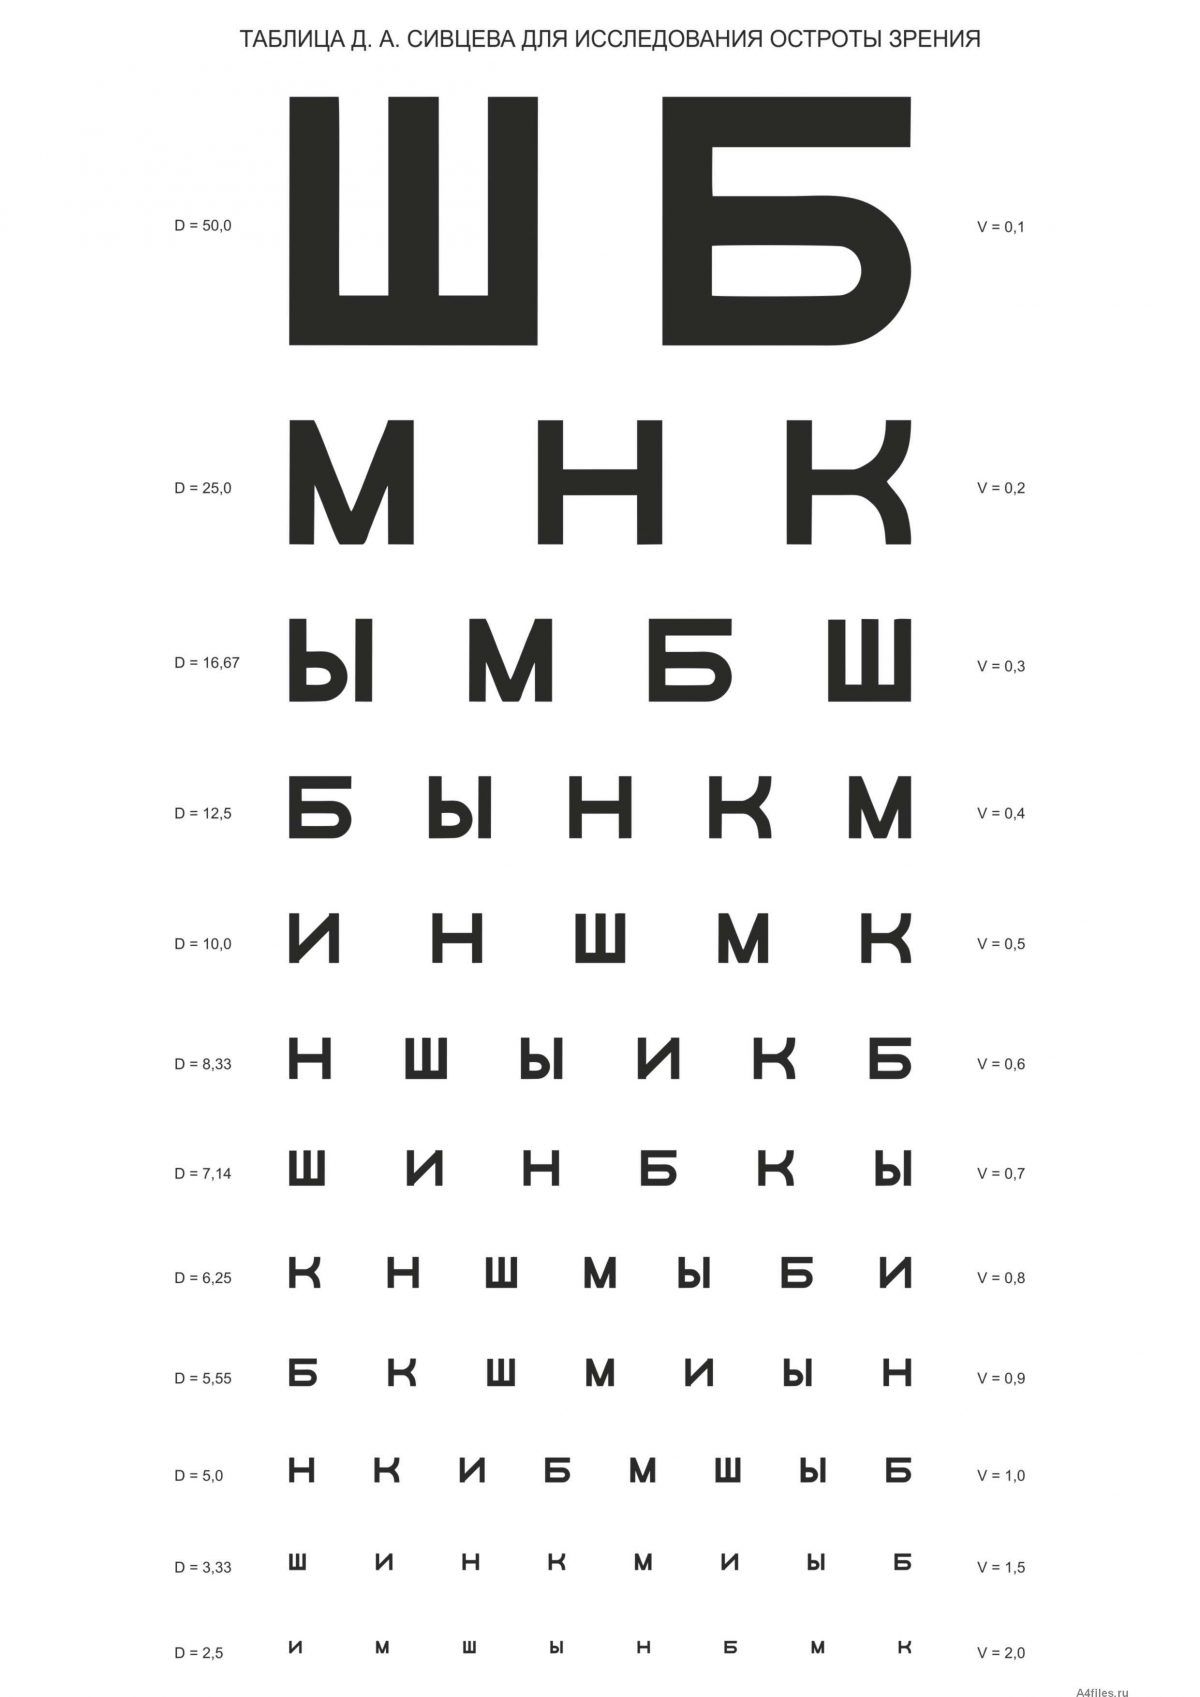 Таблица Сивцева Д. А. для исследования остроты зрения